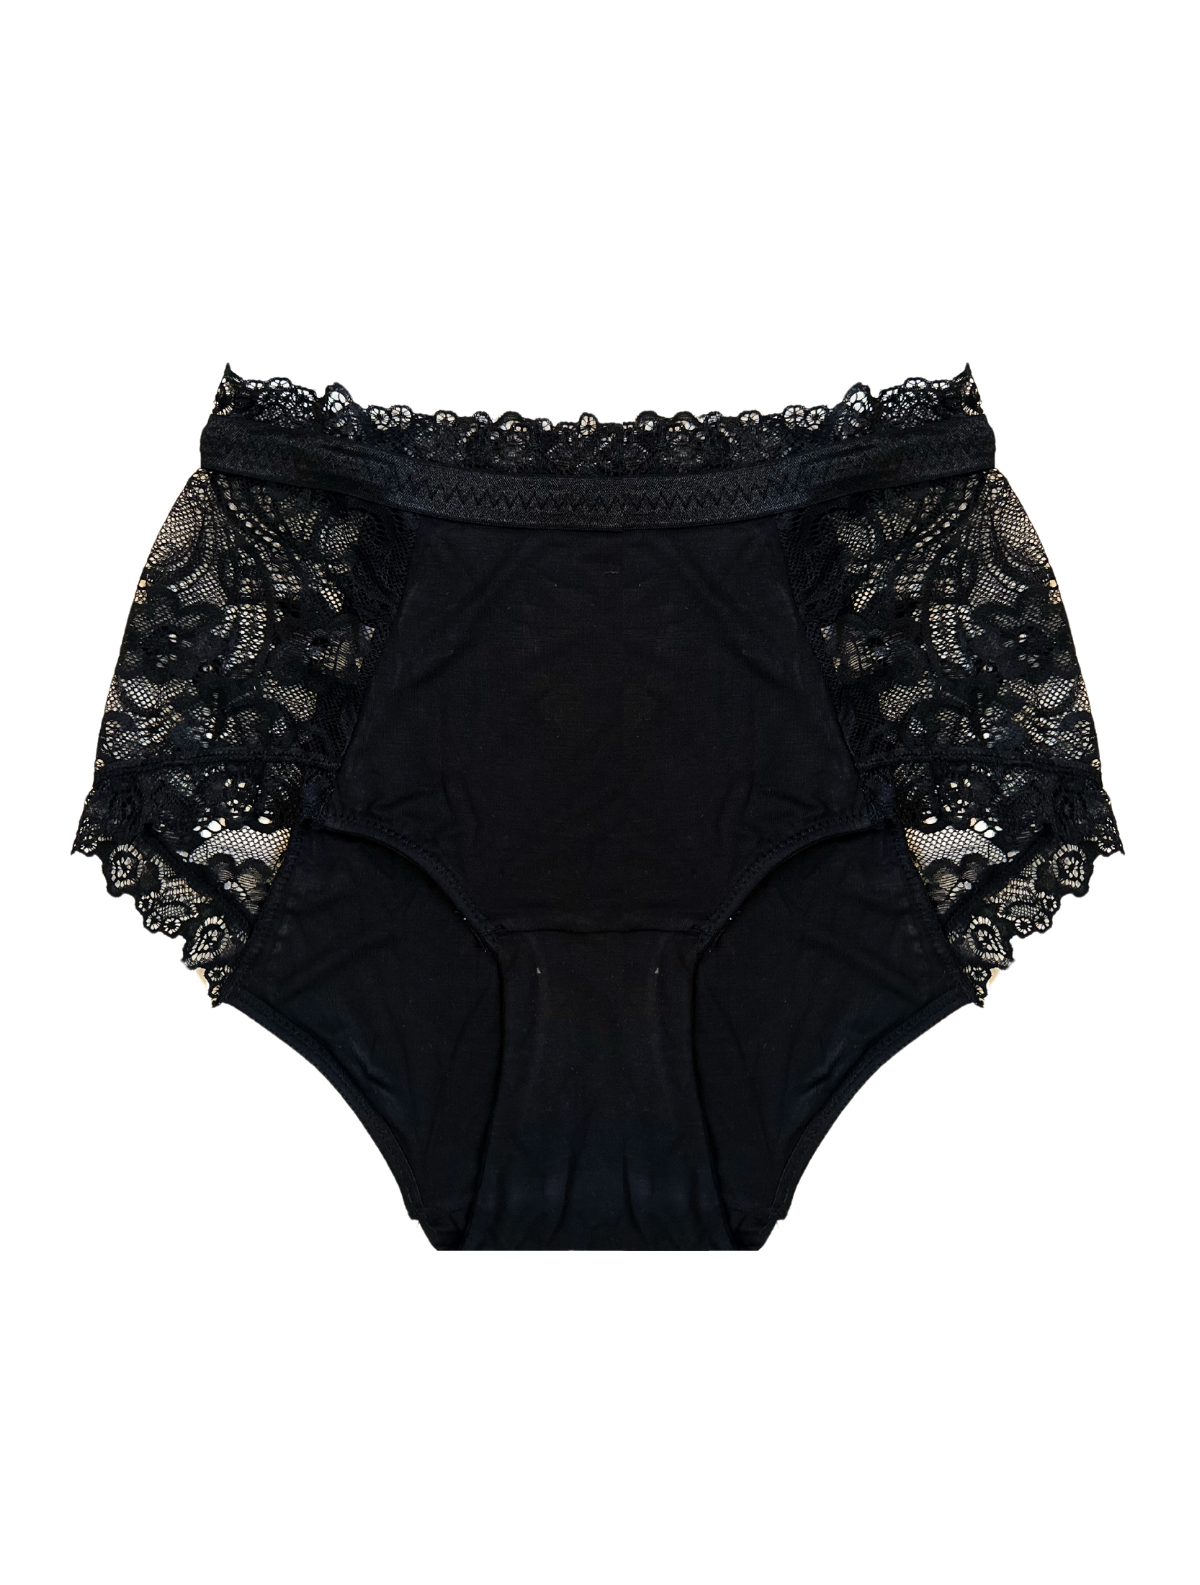 Knotty Underwear - Women's Underwear 6 Pack - Black Briefs High Waisted  Underwear for Women